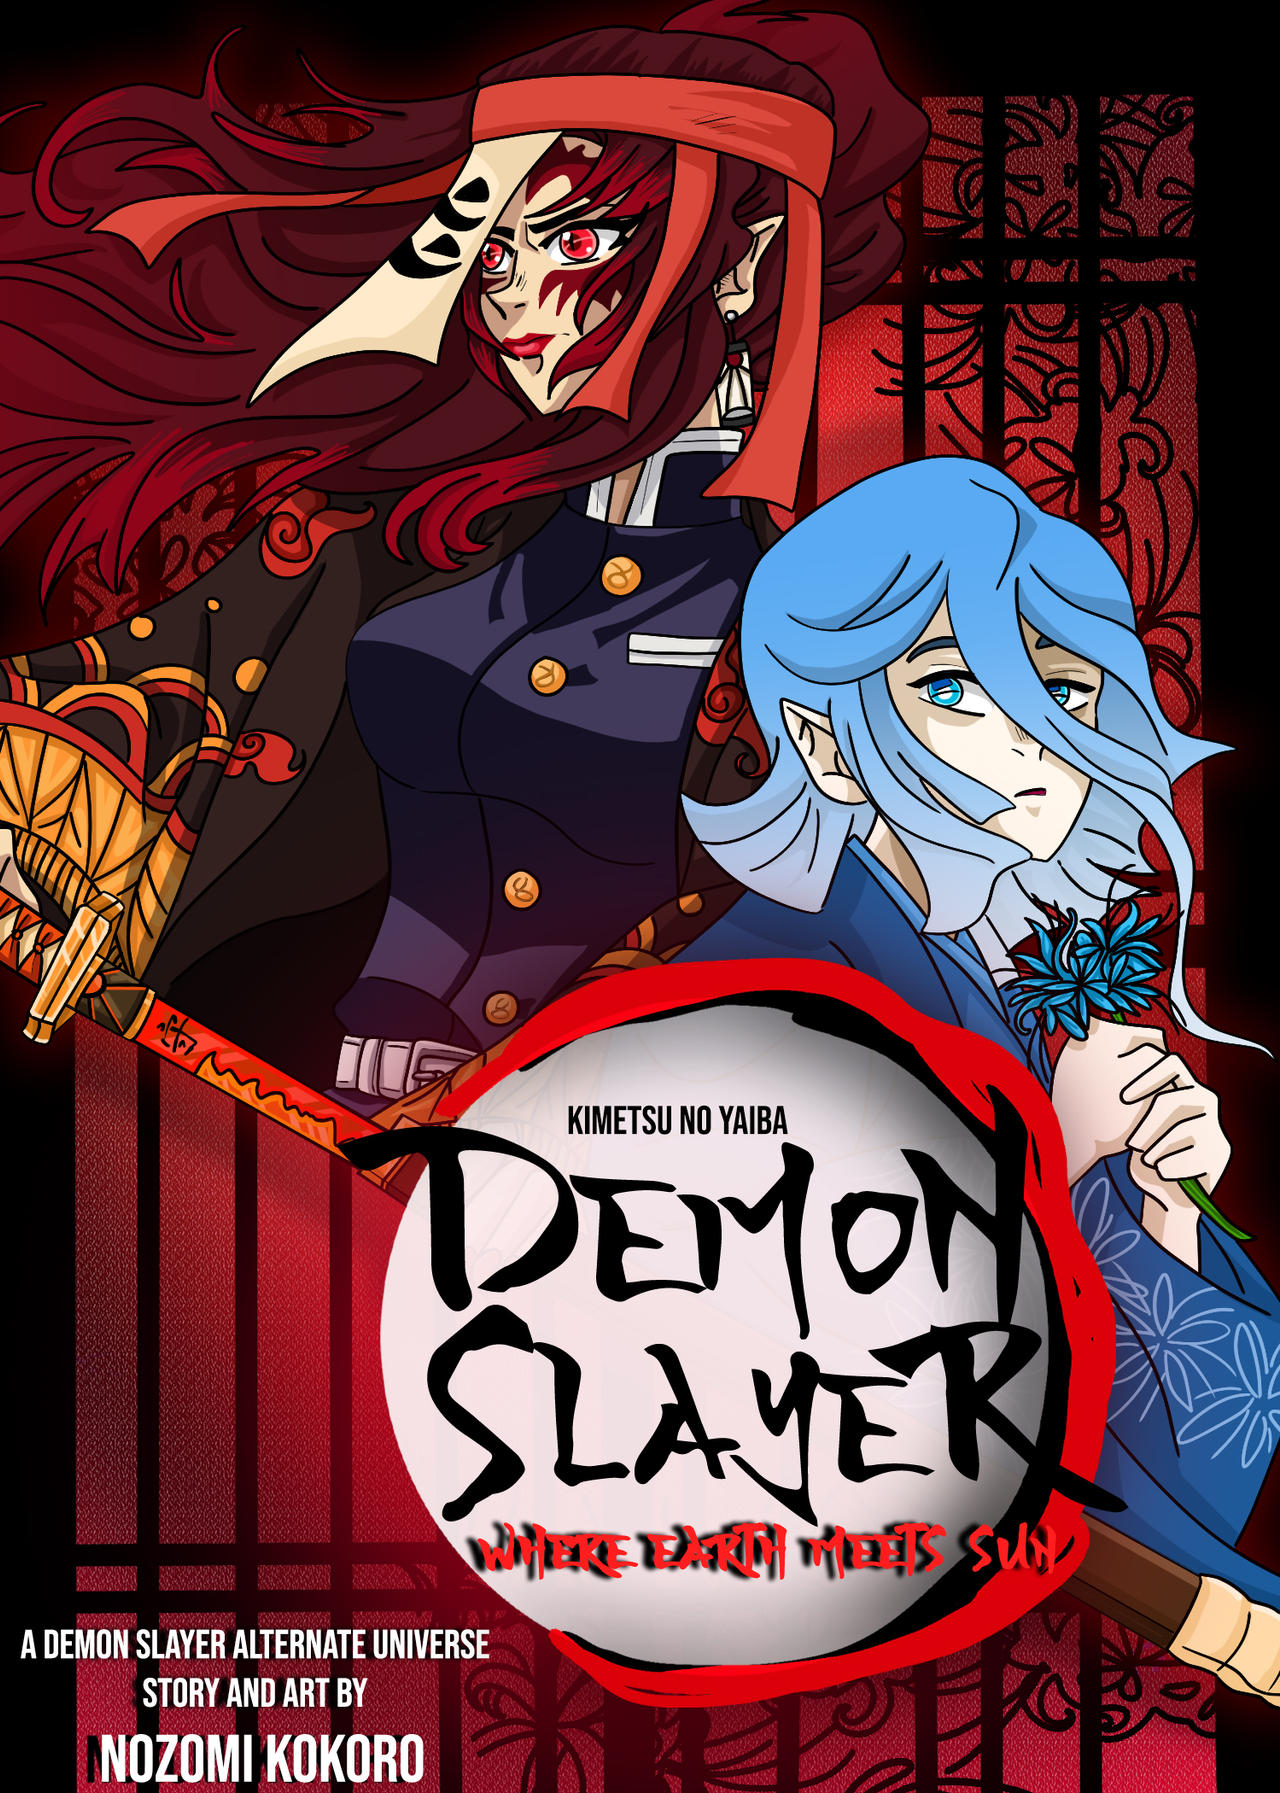 Demon Slayer  Tema da Nezuko no final do arco Vila dos Ferreiros